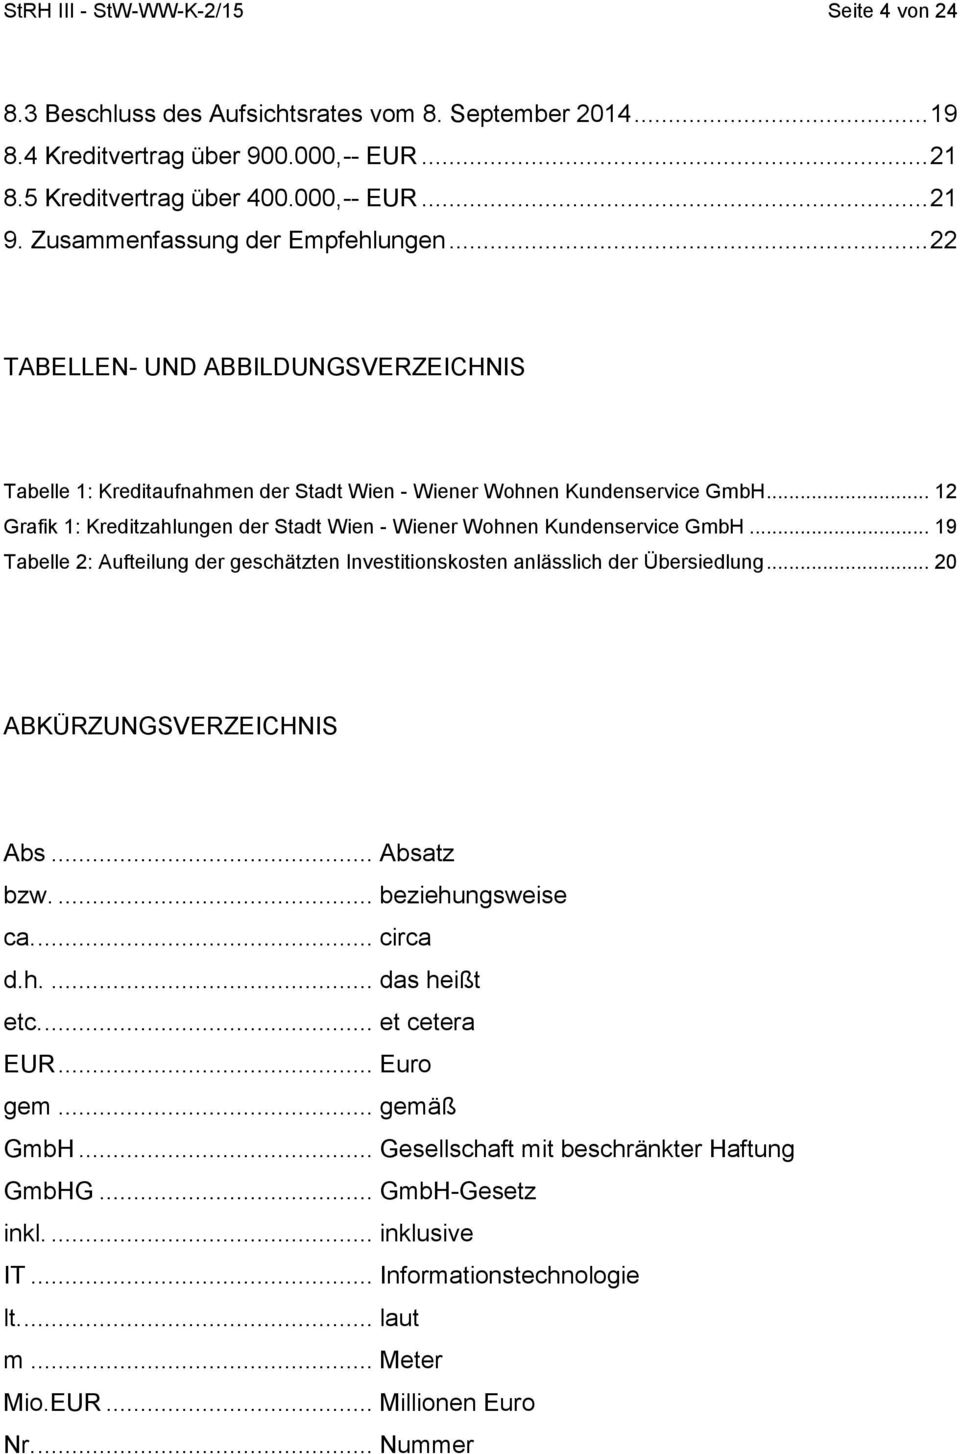 .. 12 Grafik 1: Kreditzahlungen der Stadt Wien - Wiener Wohnen Kundenservice GmbH... 19 Tabelle 2: Aufteilung der geschätzten Investitionskosten anlässlich der Übersiedlung.